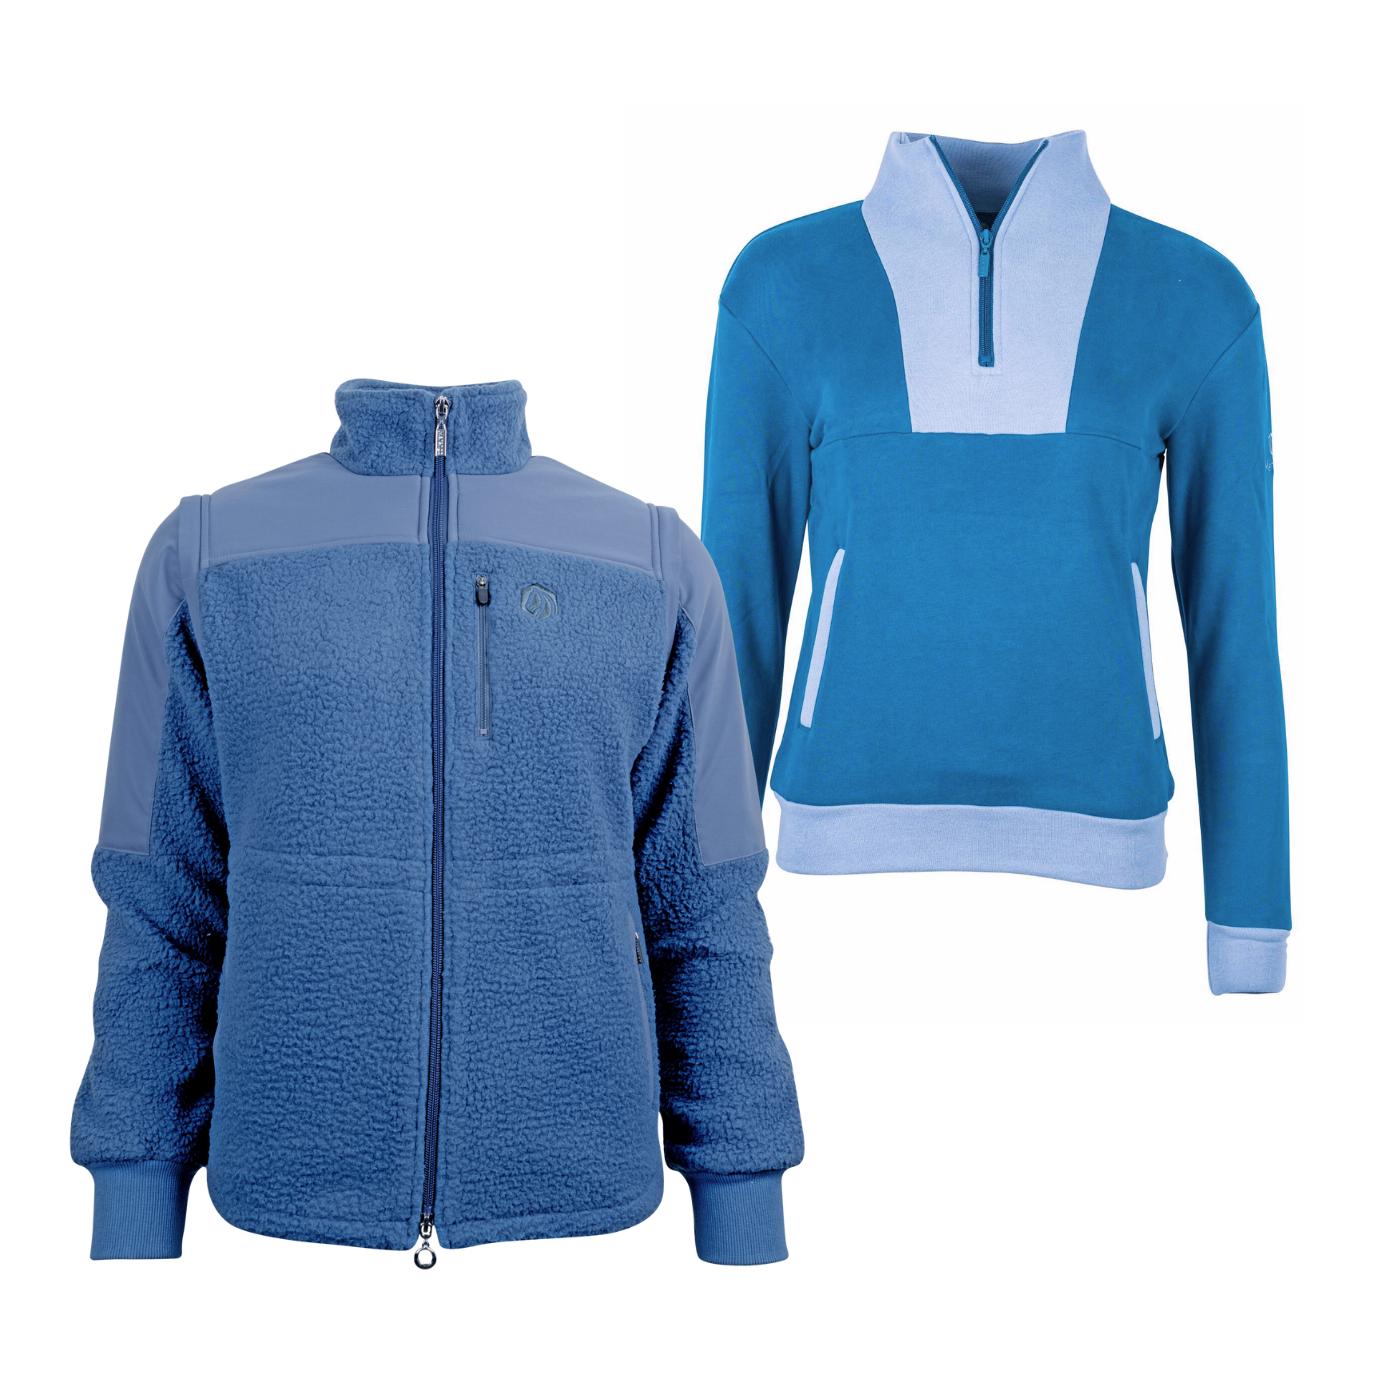 Marengo Outfit-Set Cosy Rides - Teddyfleece-Jacke & Zip Sweatshirt Farbe: Calm Blue / Ocean Blue, Grösse Jacke: XXS, Grösse Pullover: M von Marengo